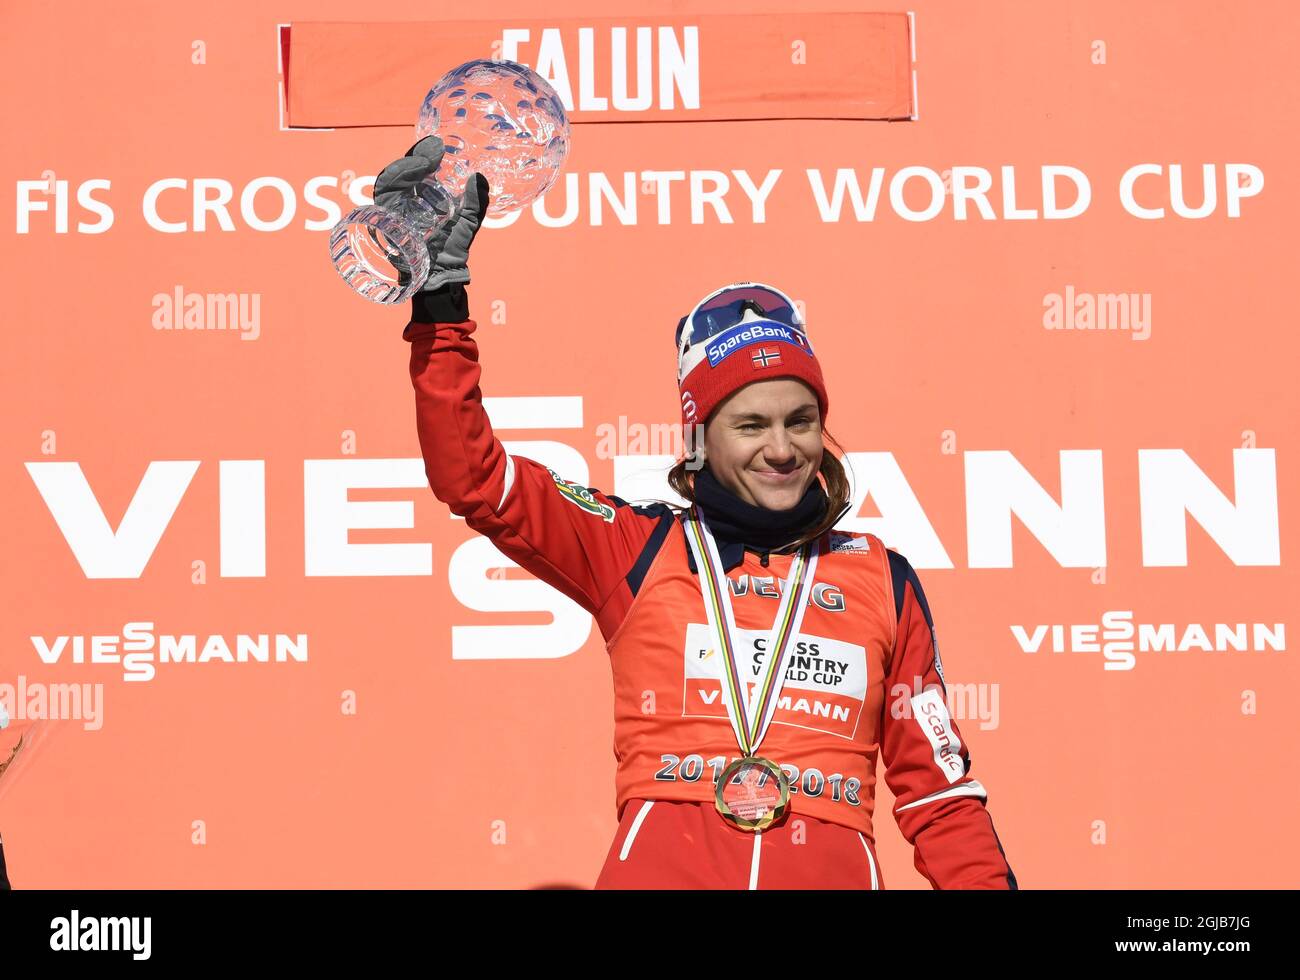 FALUN 20180318 Norwegens Heidi Weng Weltcup-Gesamtsiegerin feiert am Sonntag, den 18. März 2018, mit der Kristallkugel auf dem Podium in Falun Schweden. Foto: Ulf Palm / TT kod 9110 Stockfoto